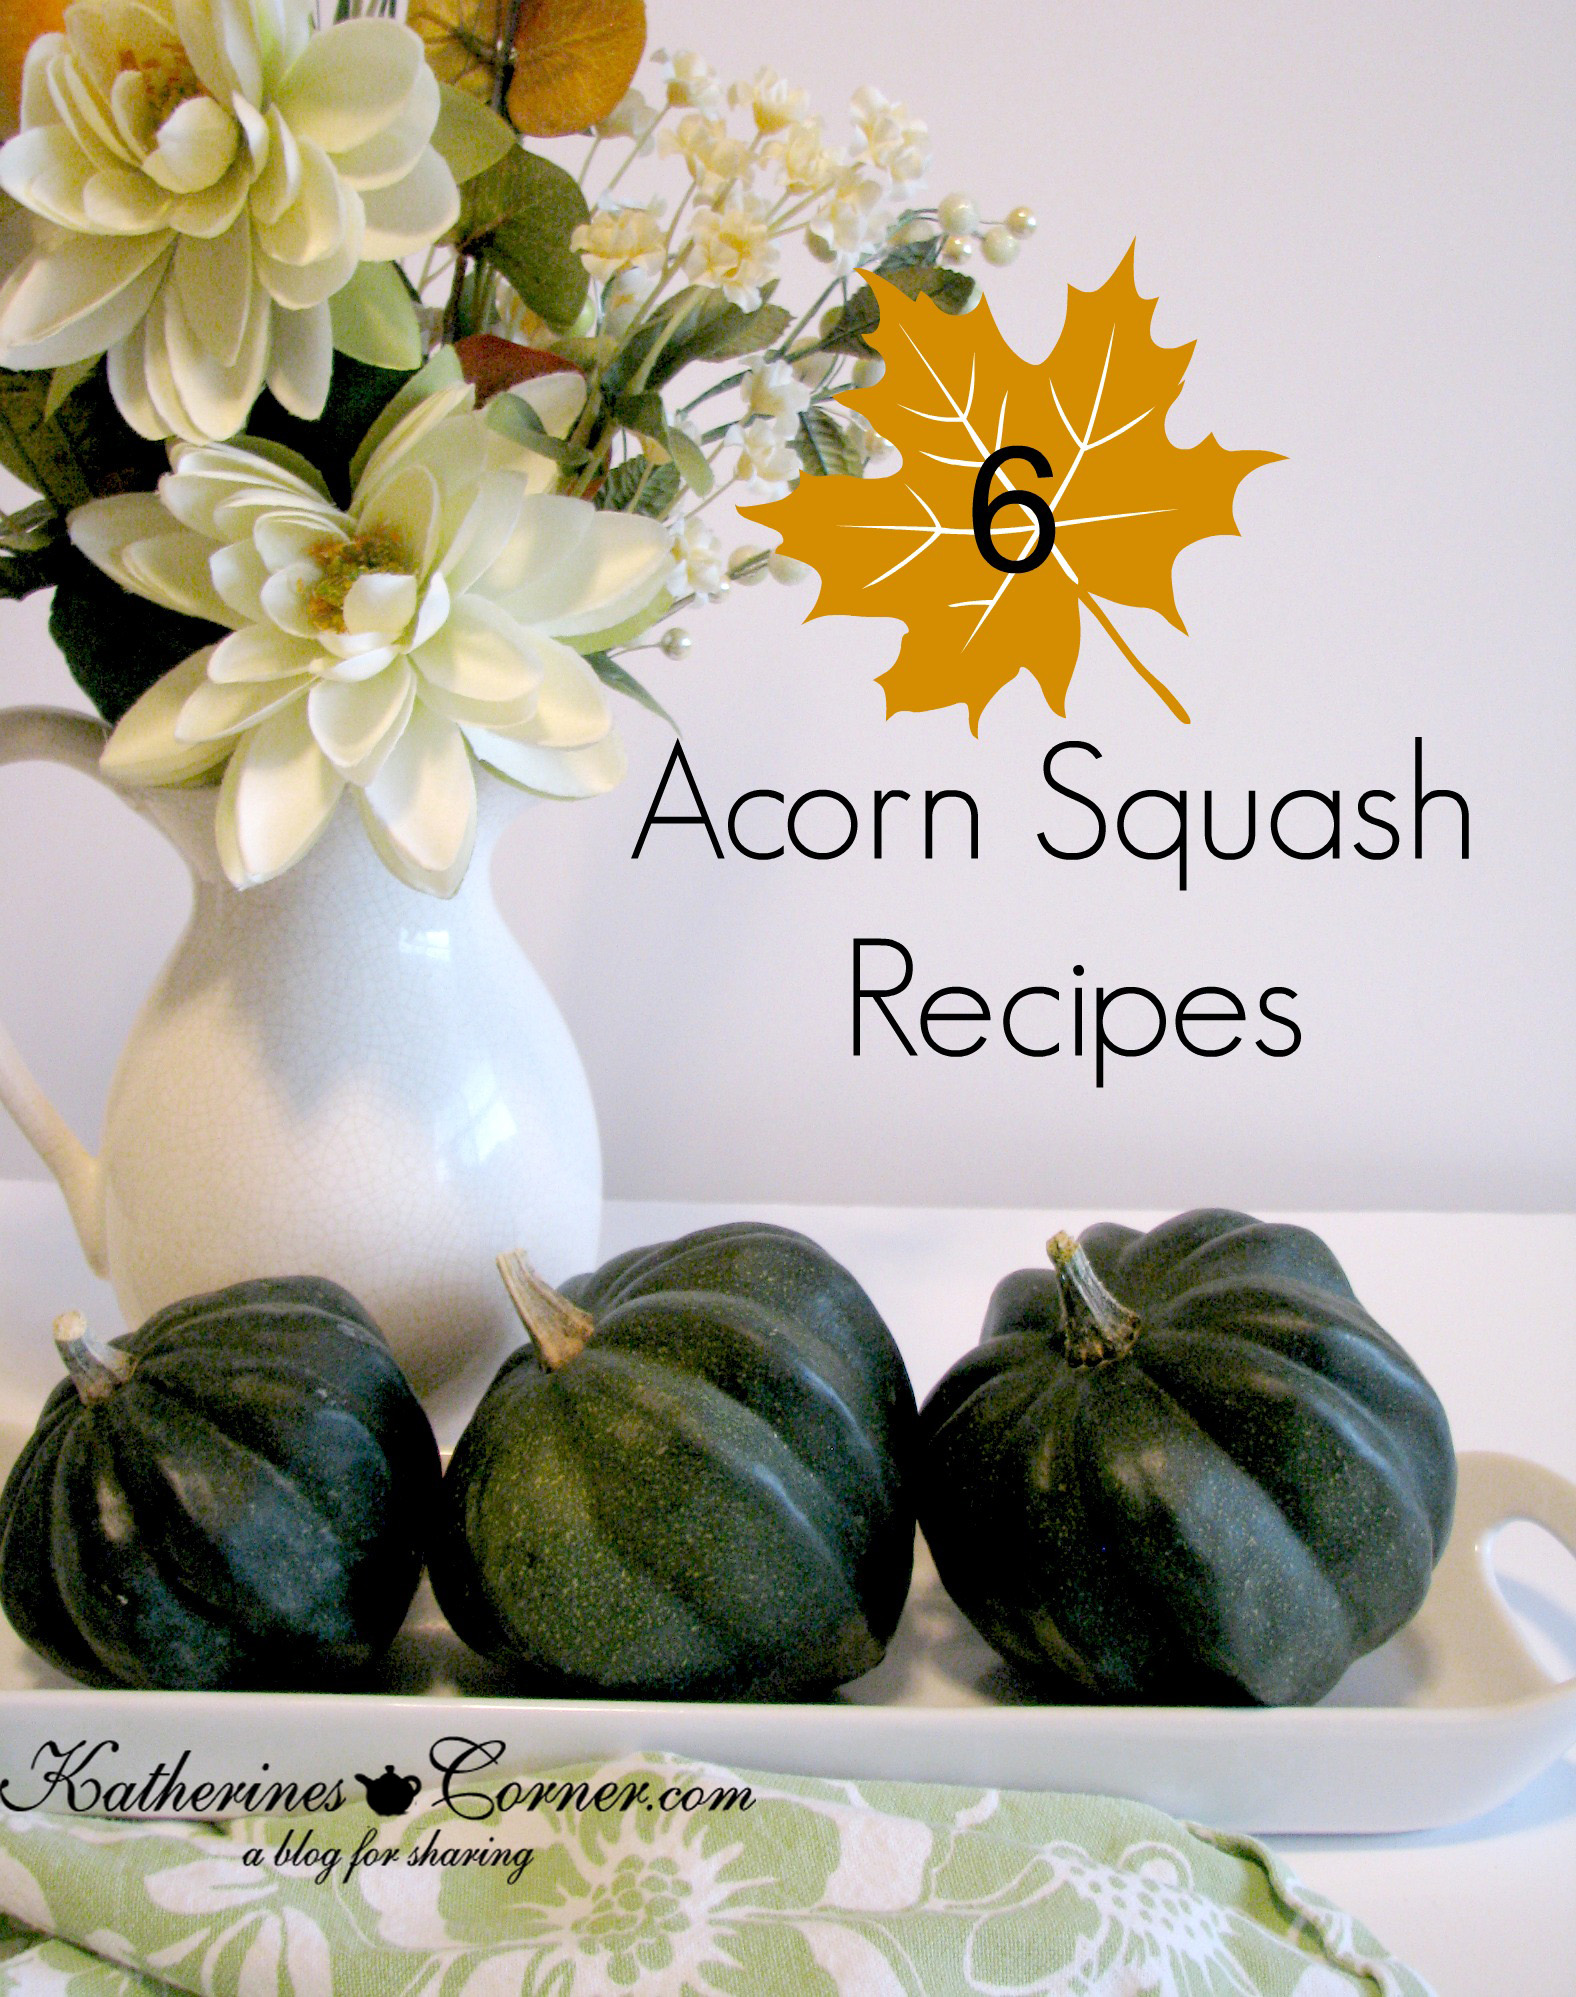 Six Acorn Squash Recipes